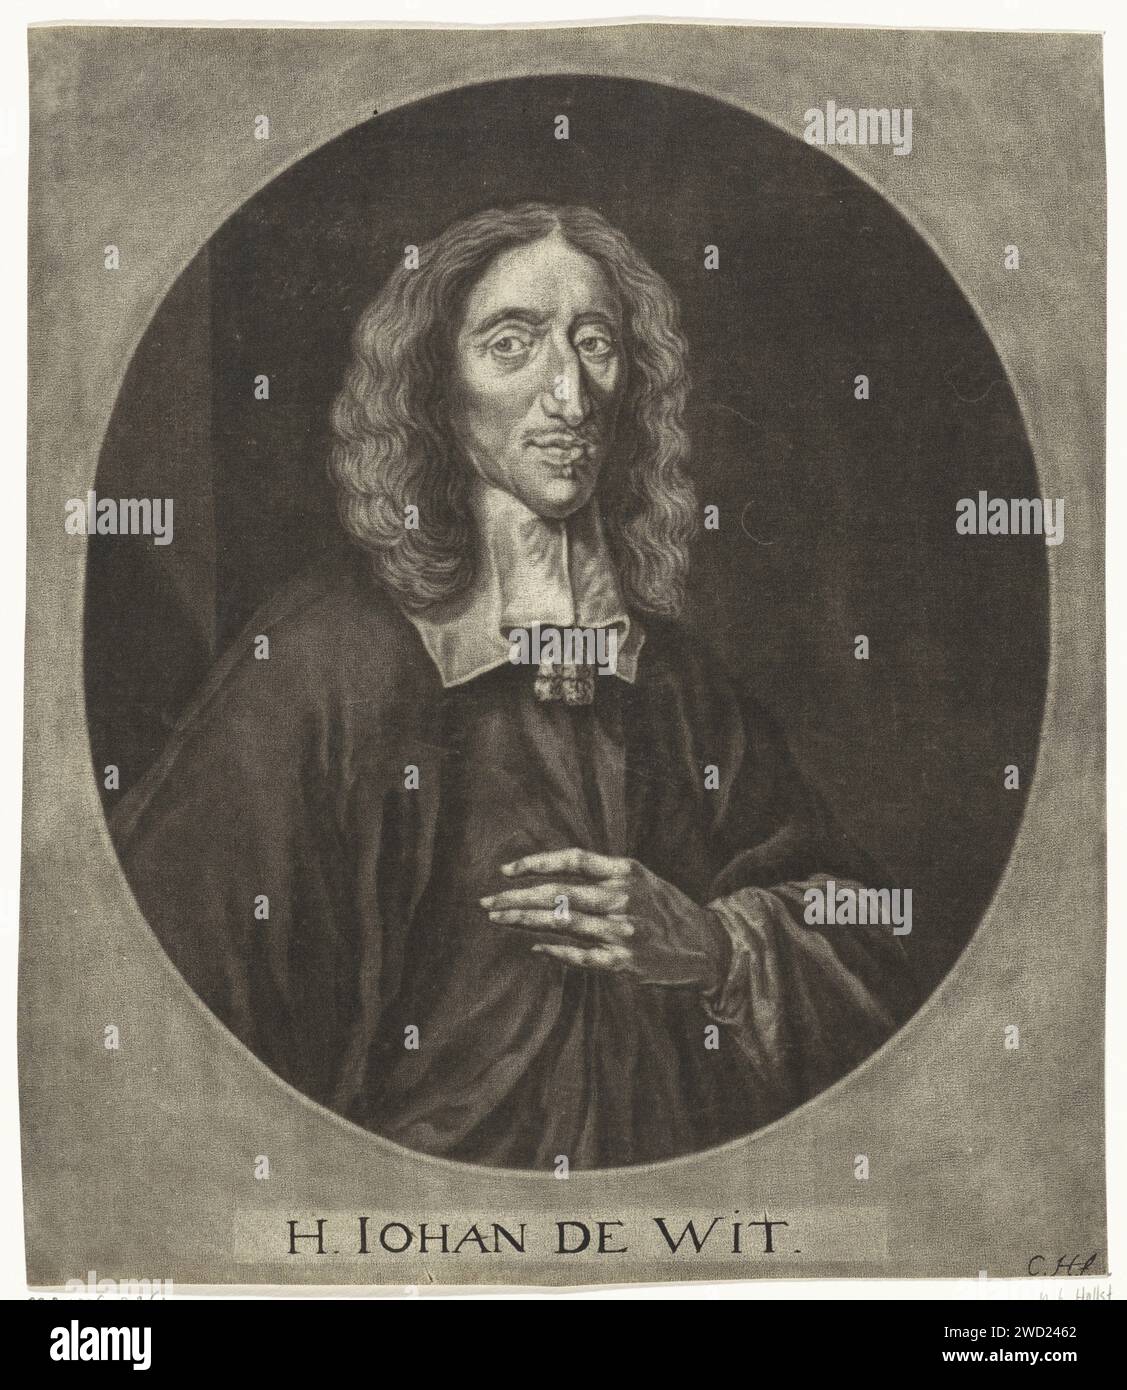 Ritratto di Johan de Witt, Cornelis A. Hellemans, dopo Jan de Baen, 1660 - 1700 stampa l'avvocato Johan de Witt, pensionato del consiglio della regione olandese. Incisione su carta nei Paesi Bassi del Nord Foto Stock